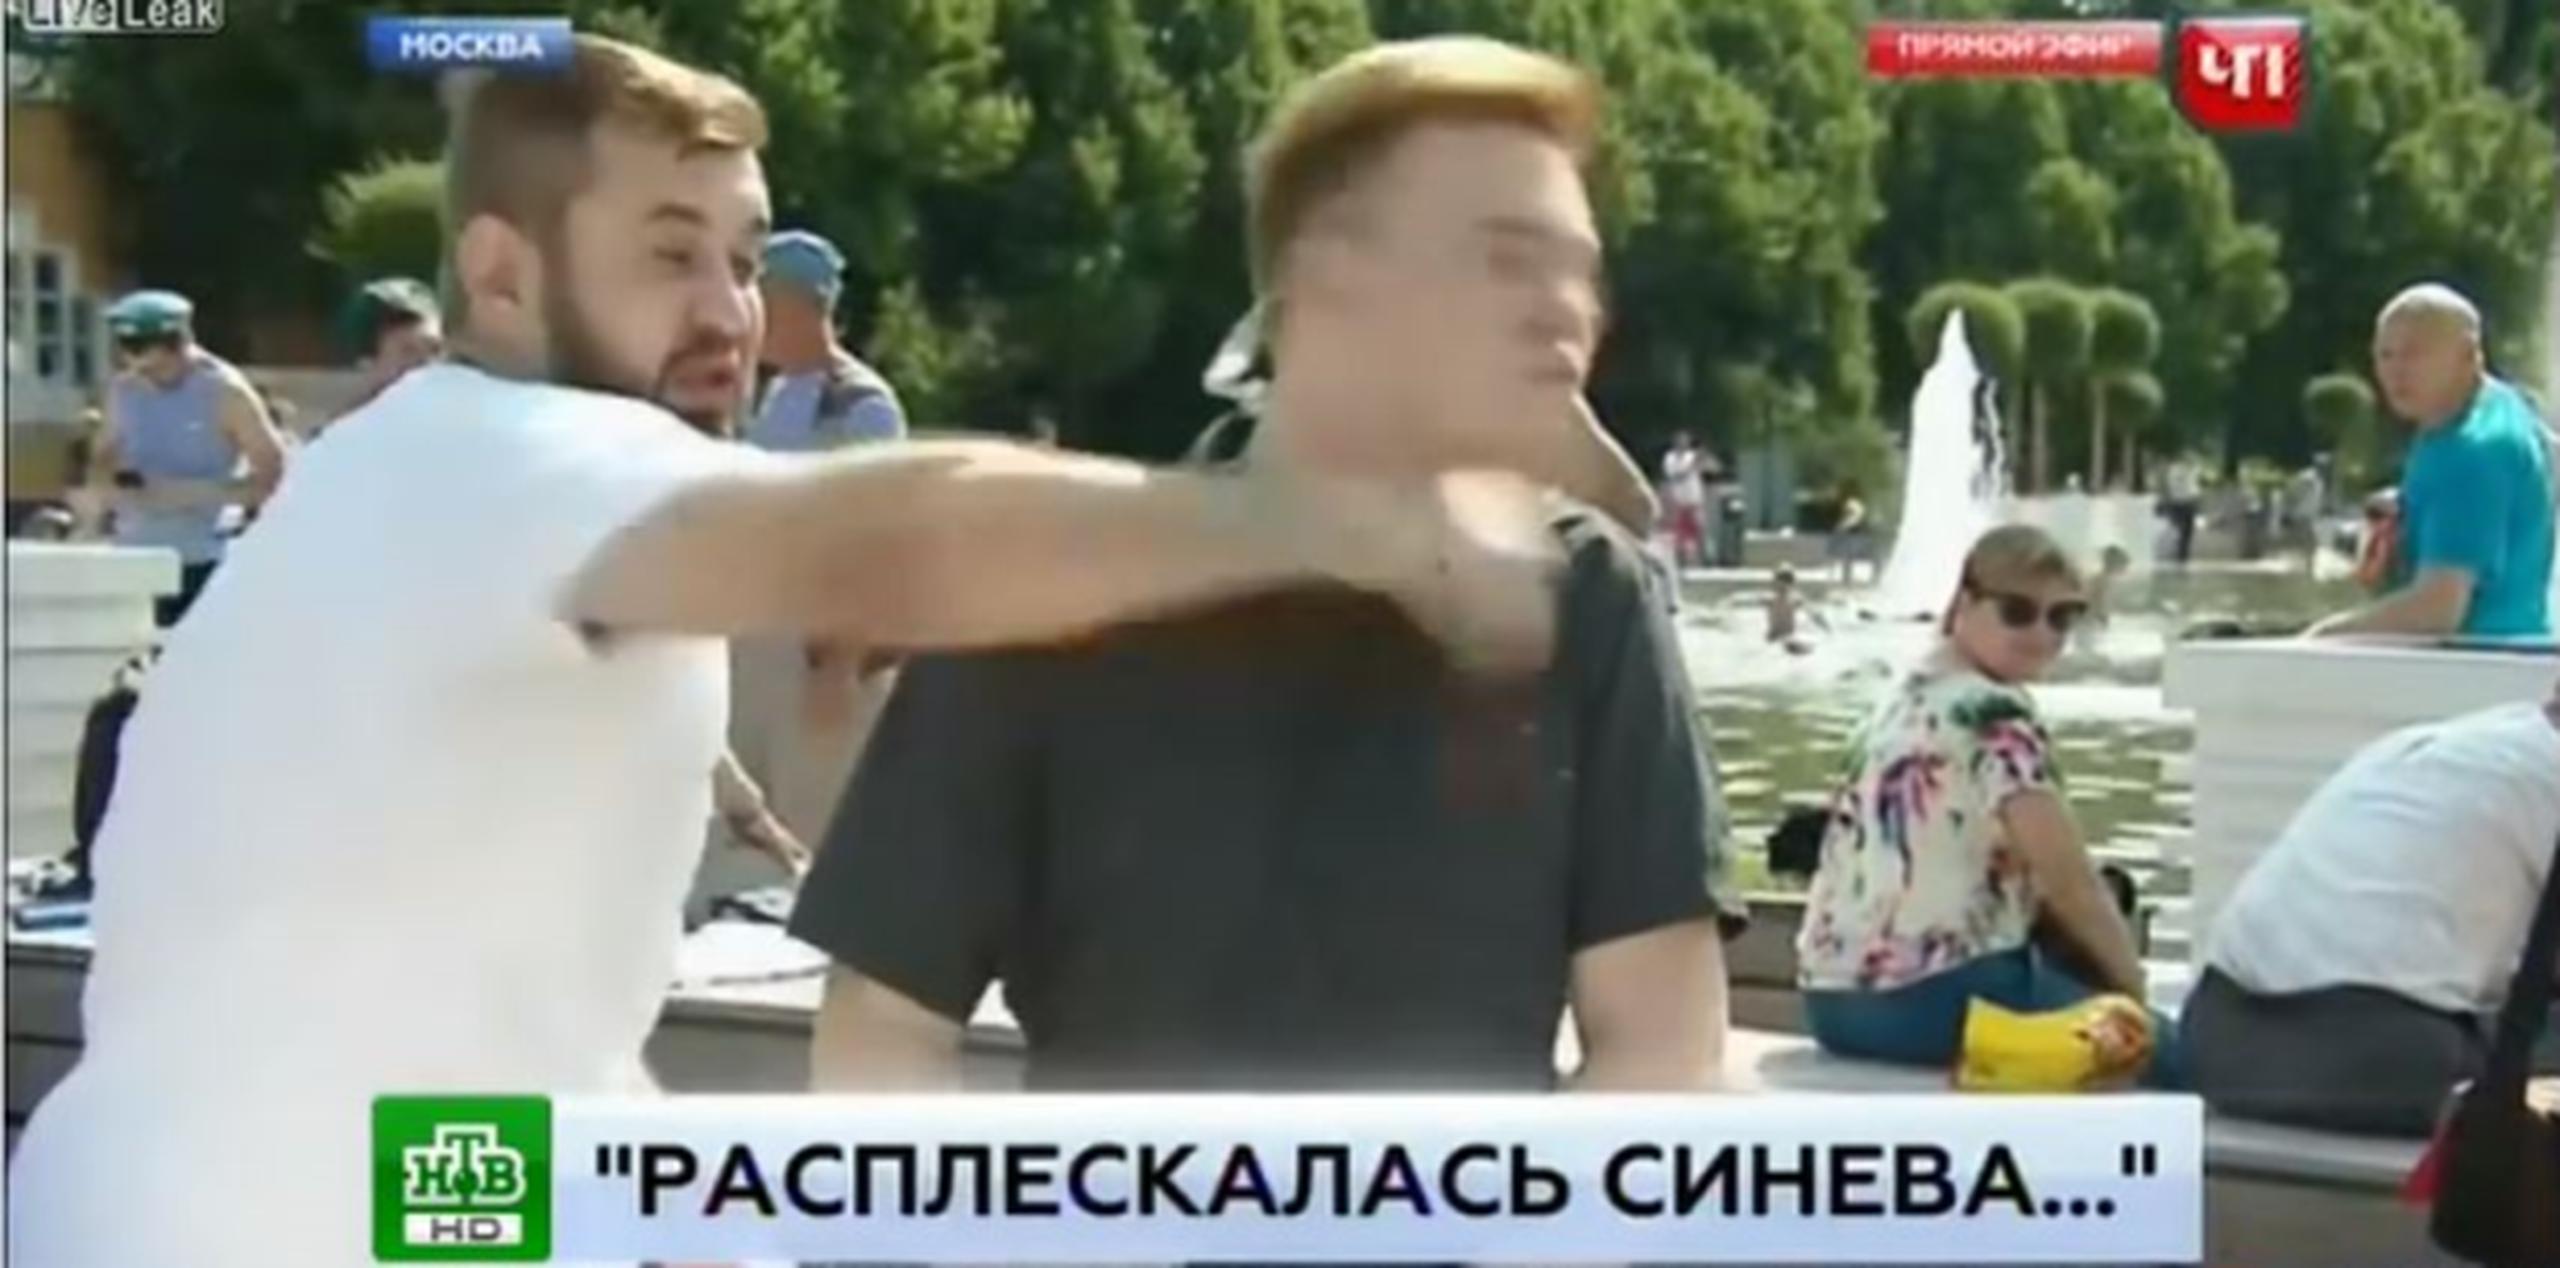 Al periodista no le fue nada bien en su transmisión en vivo sobre una tradicional celebración rusa. (Captura/YouTube)